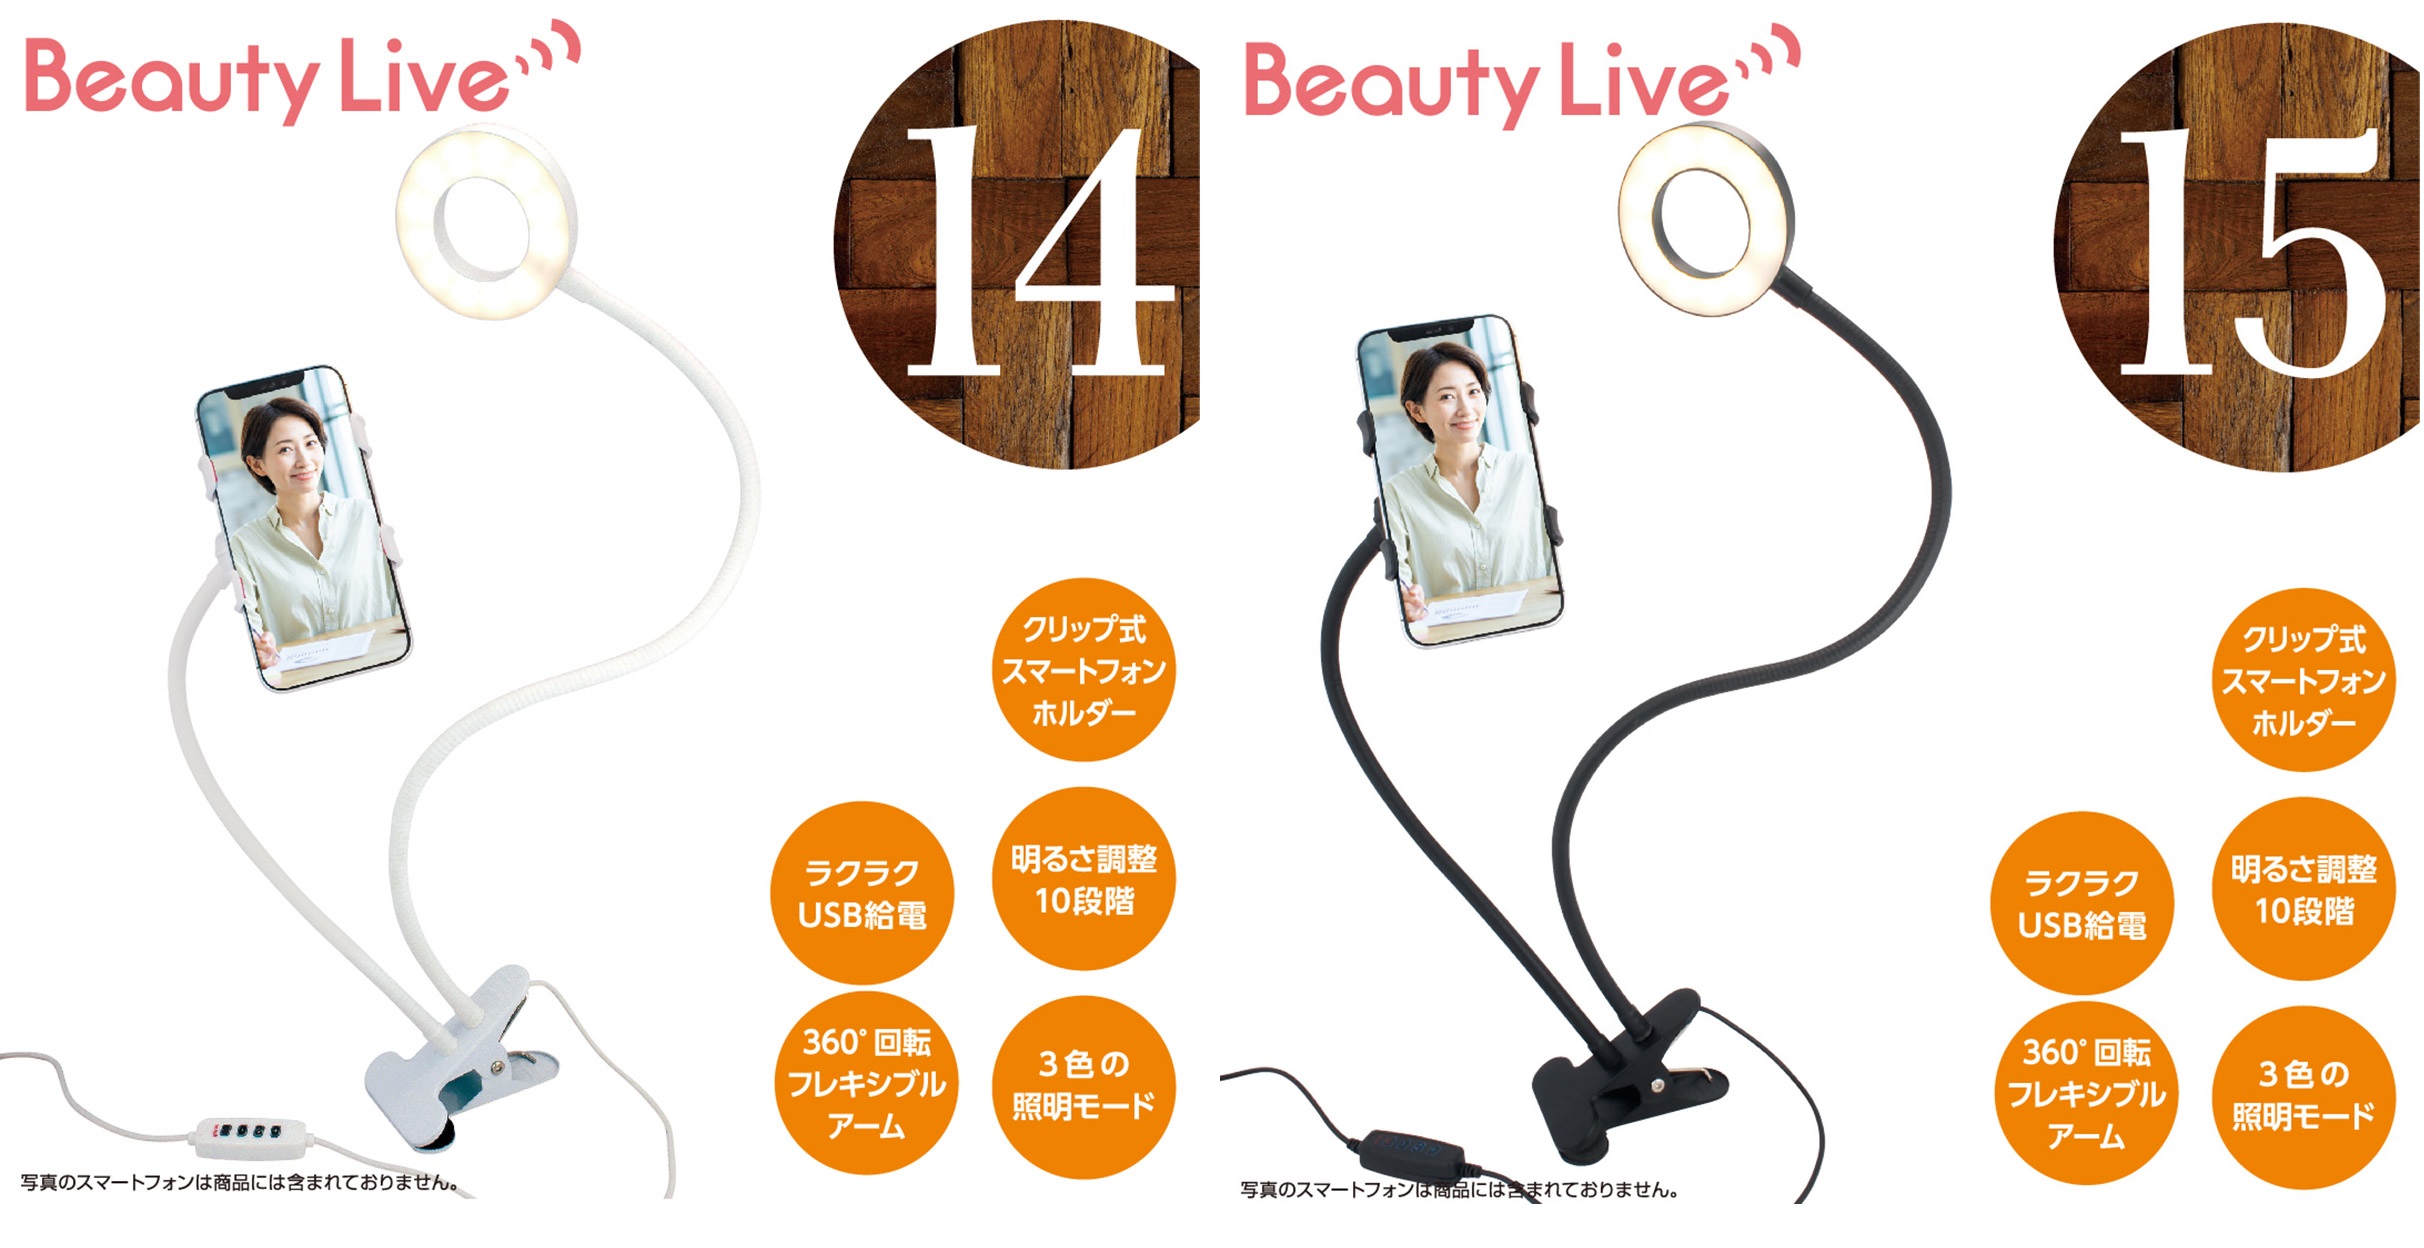 【オンラインモバイルホルダー】BeautyLive / BV-15 (リングライト付)販売中！